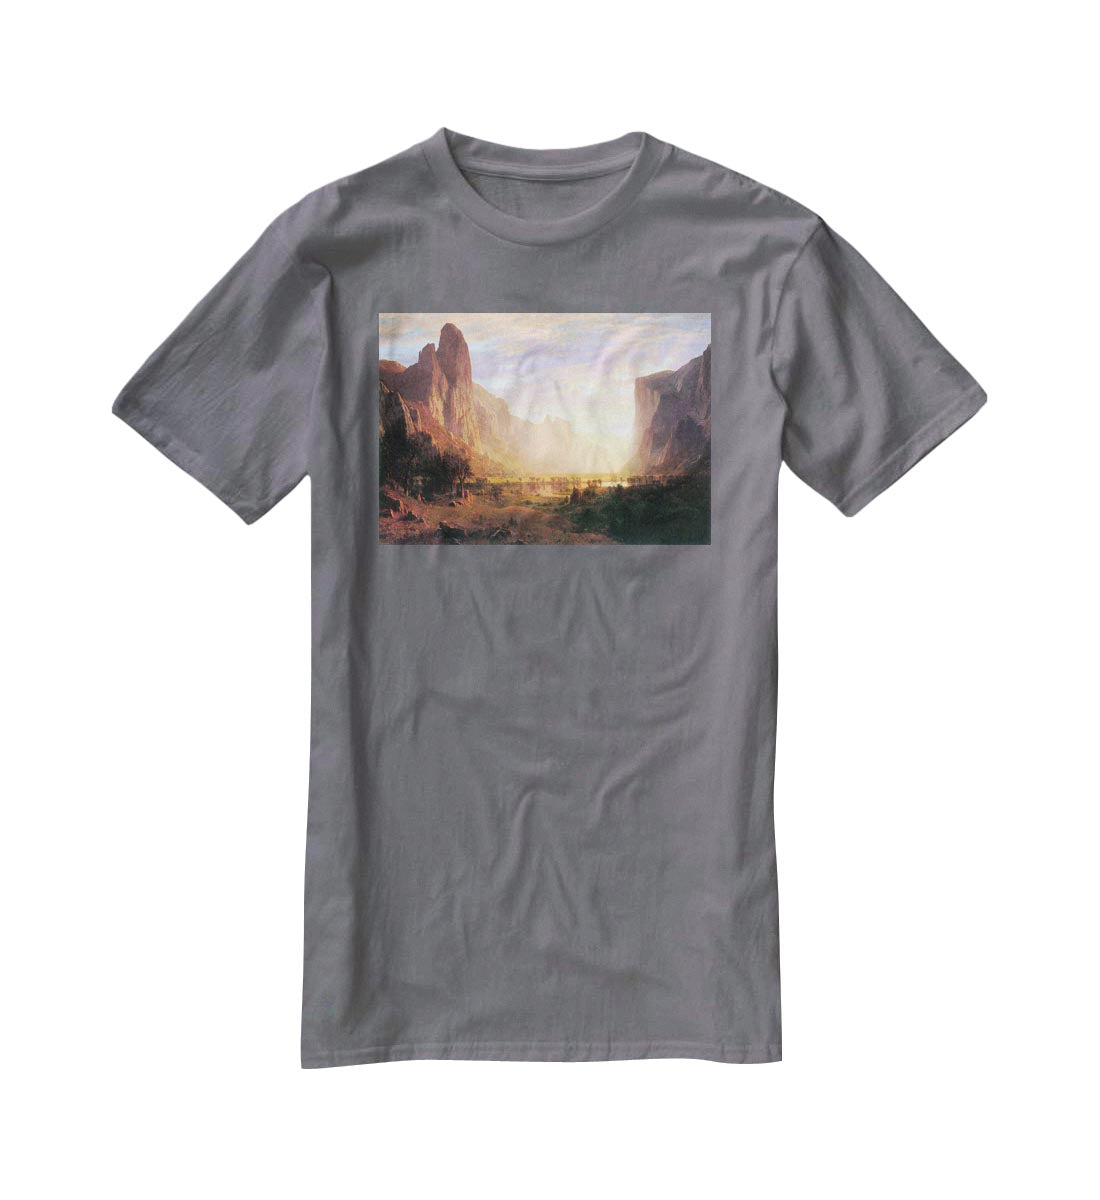 Yosemite Valley 3 by Bierstadt T-Shirt - Canvas Art Rocks - 3